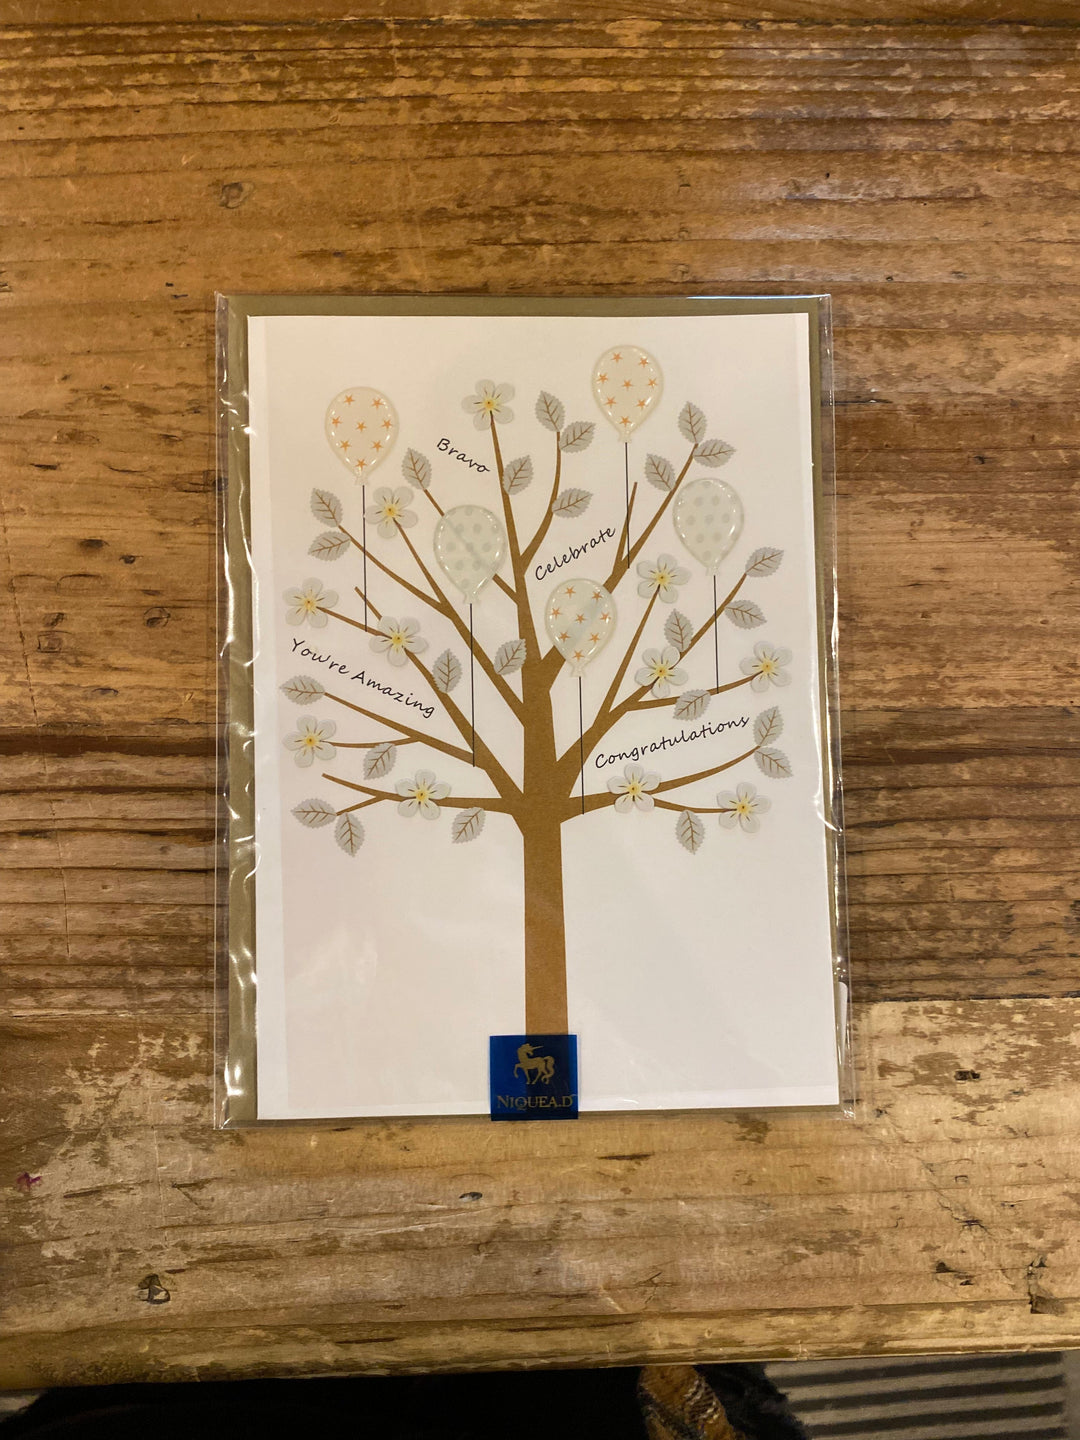 Niquea.D Card Congrats Tree with Words Congratulation Card